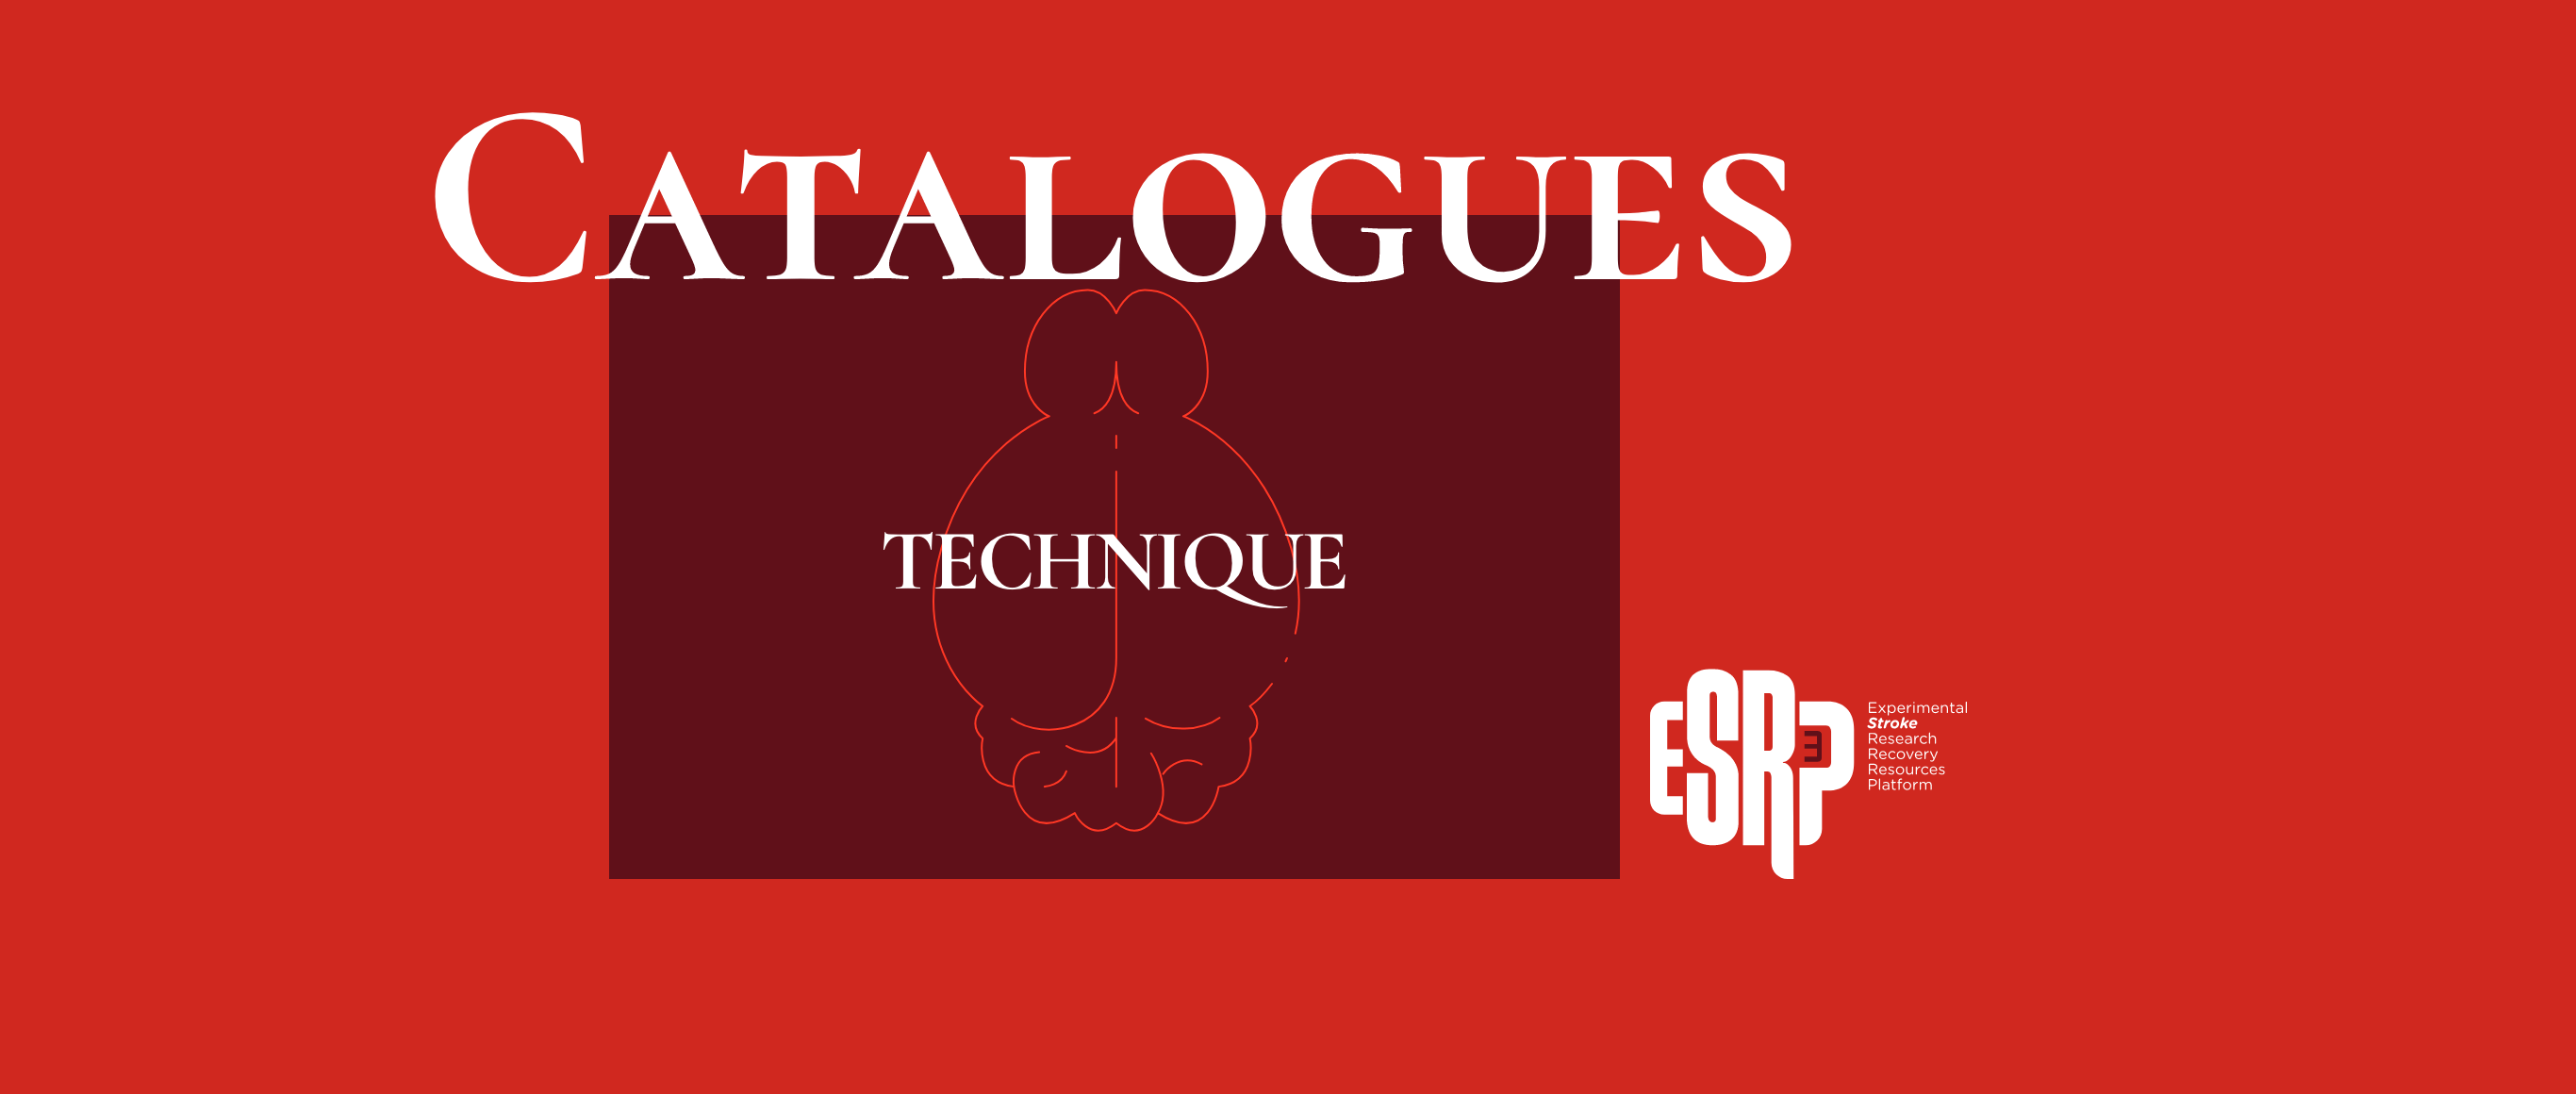 catalogues-technique